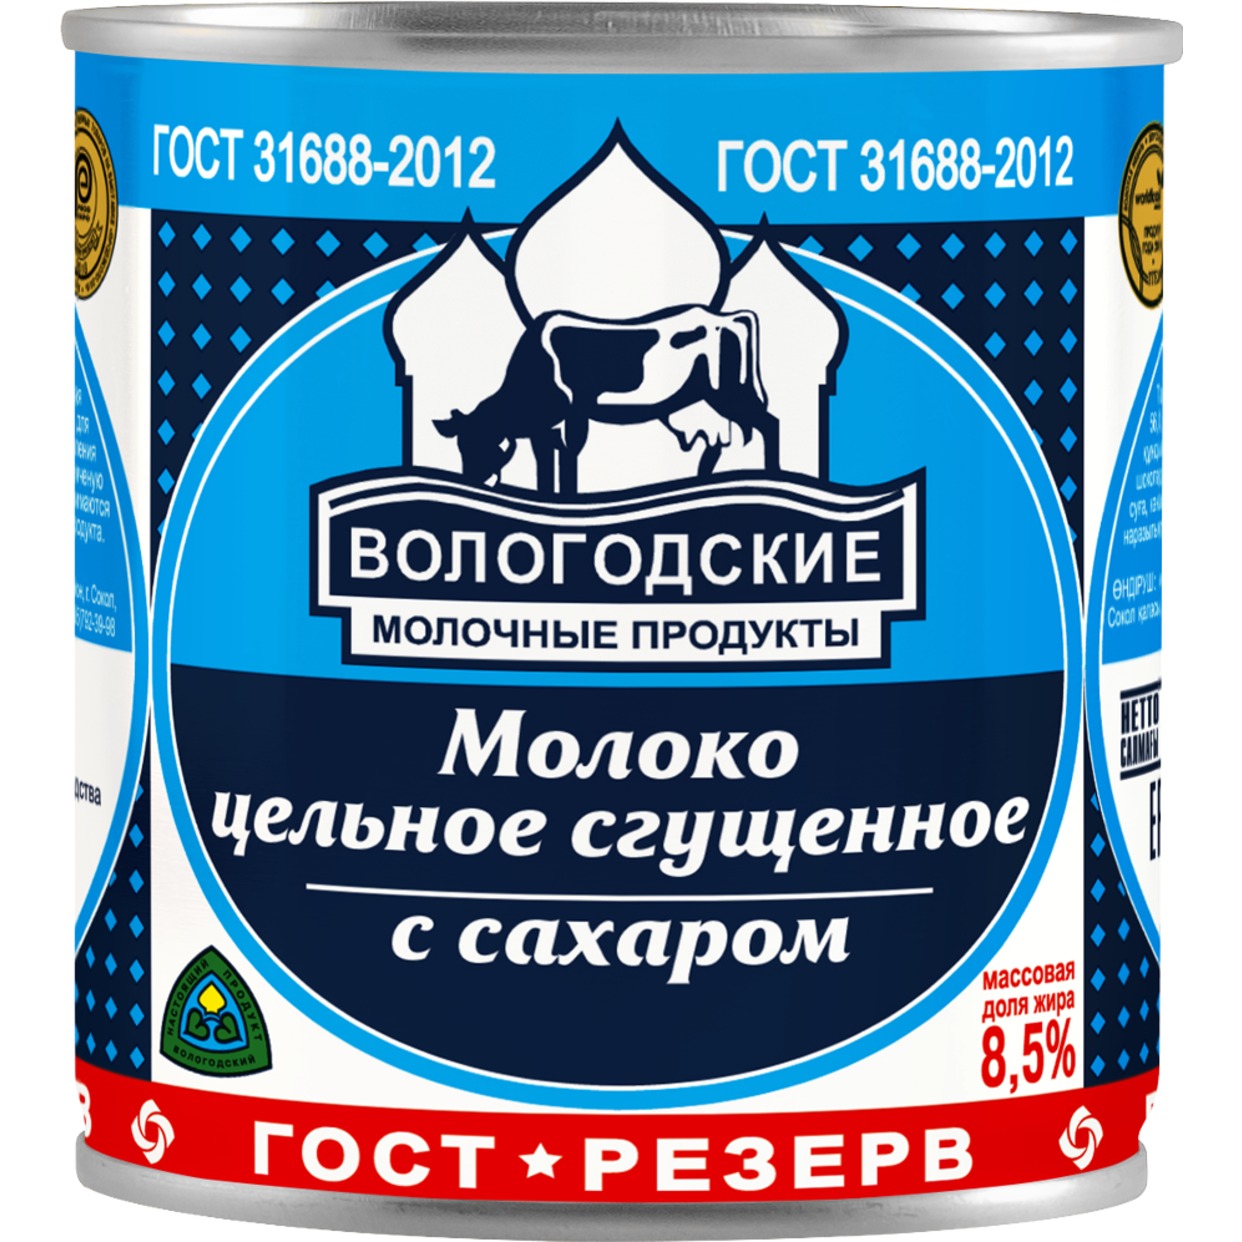 Молоко Вологодское сгущенное 8,5% 370 г по акции в Пятерочке